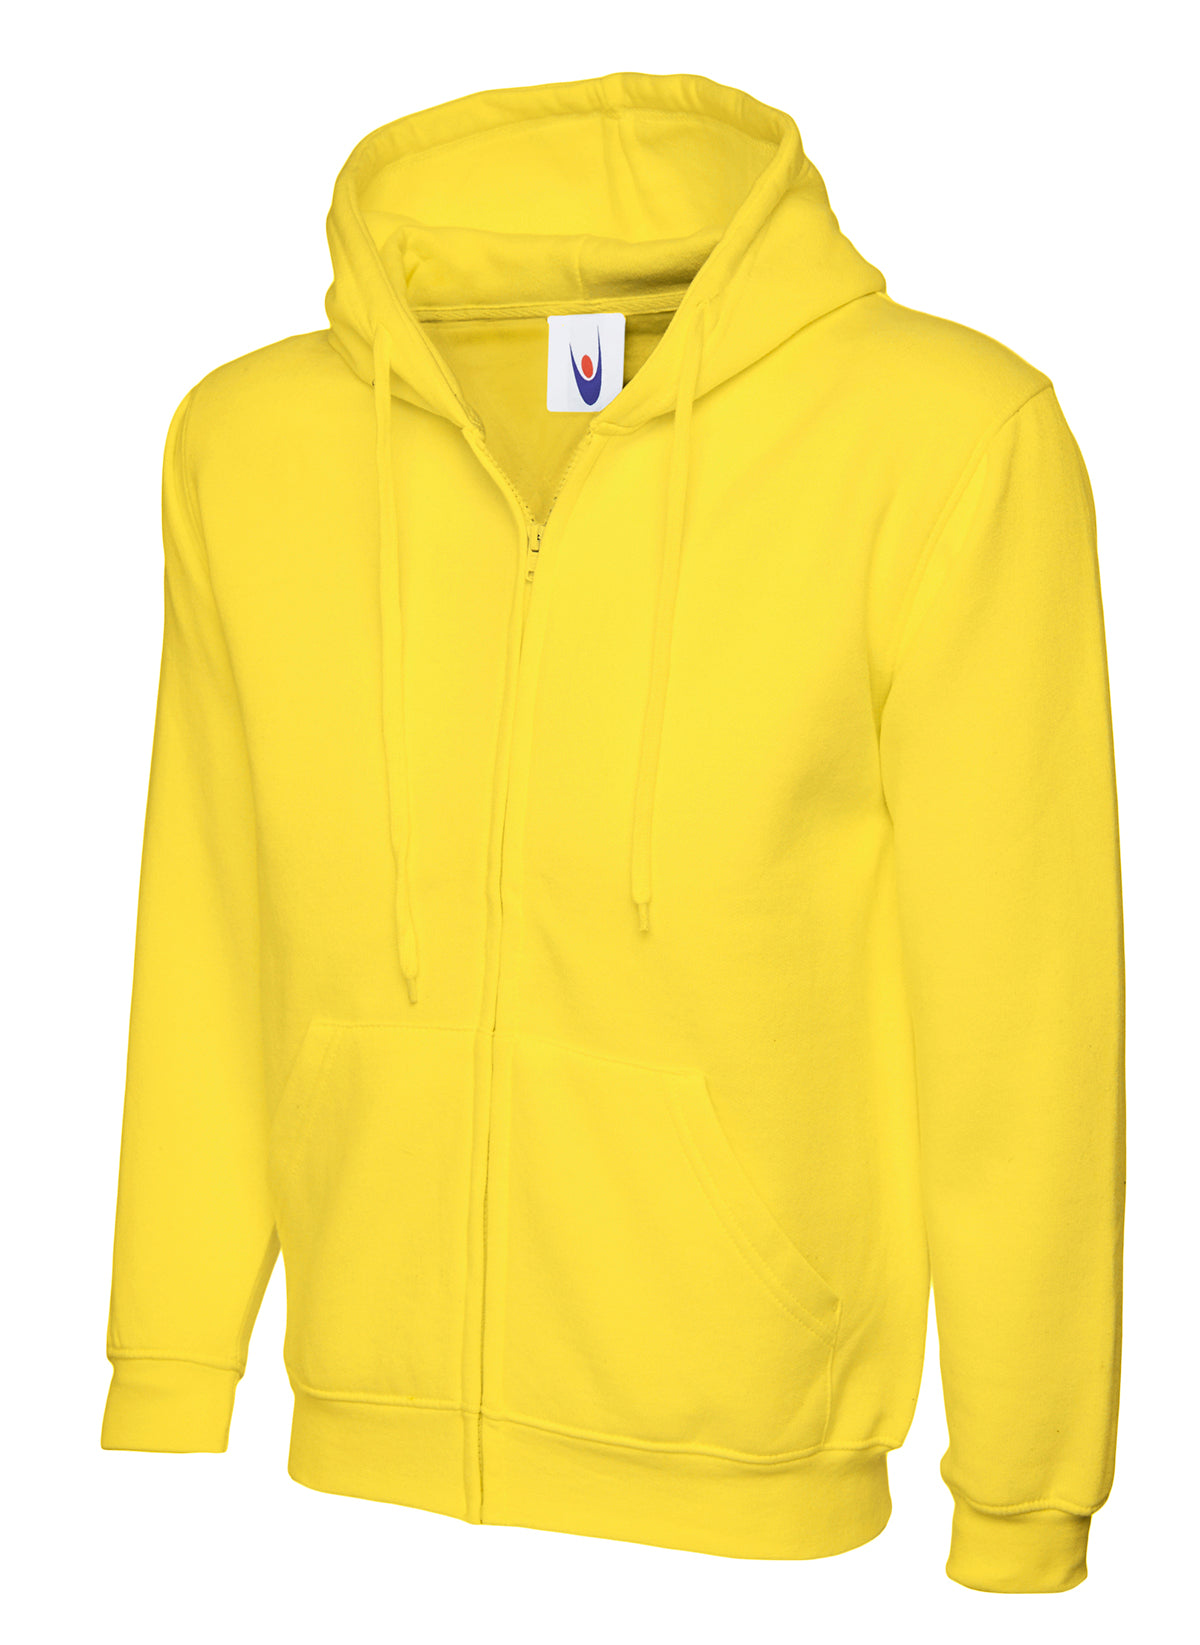 Uneek Adults Unisex Classic Full Zip Hooded Sweatshirt UC504 - Yellow